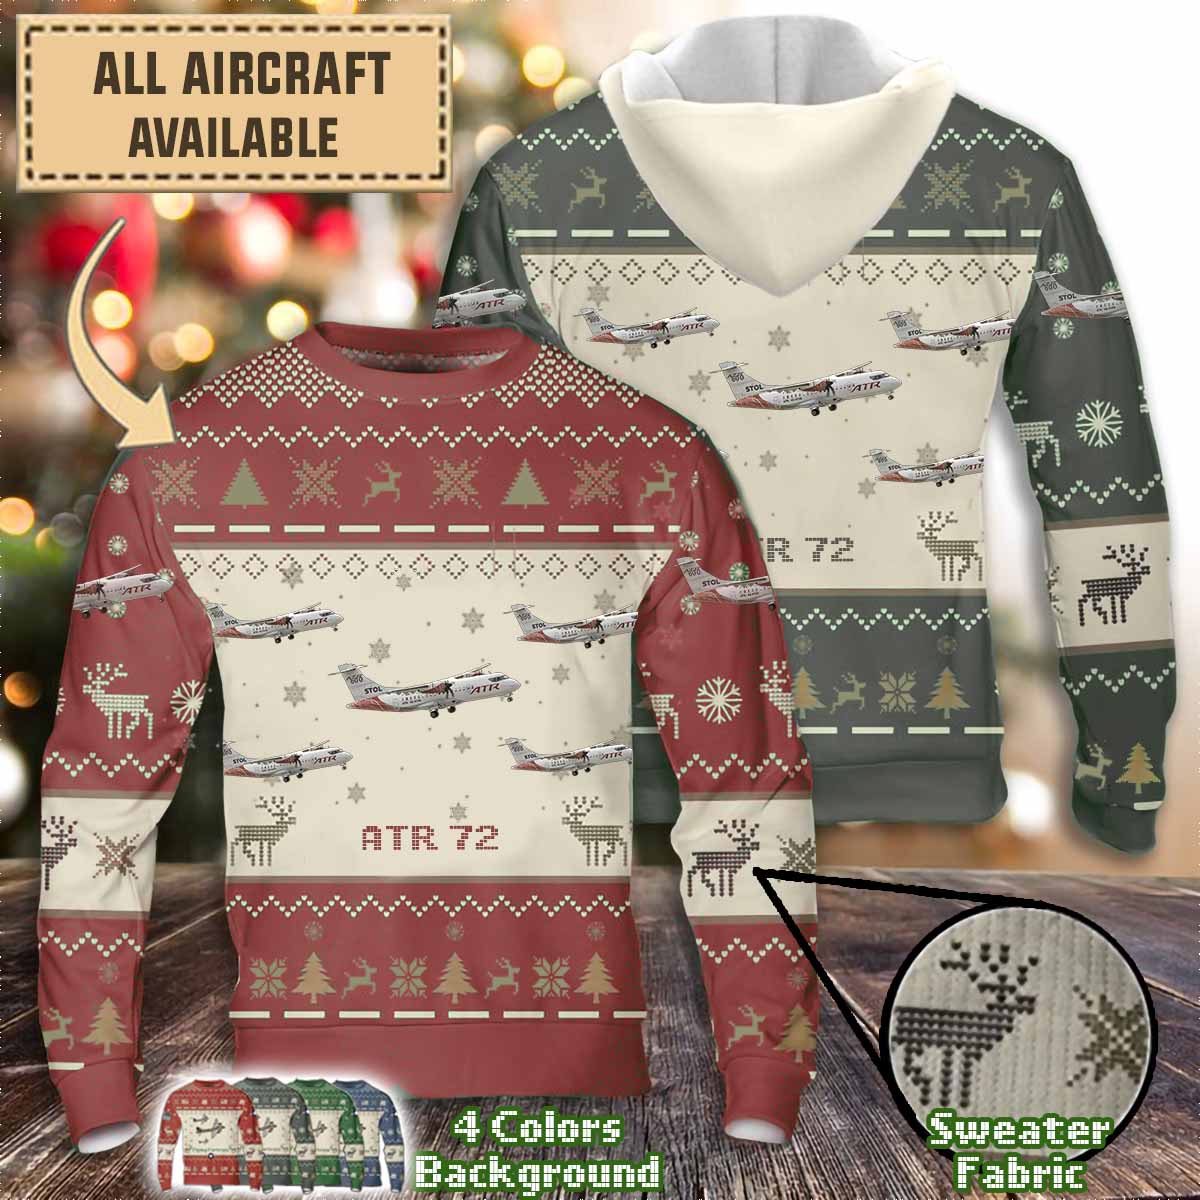 atr 72aircraft sweater